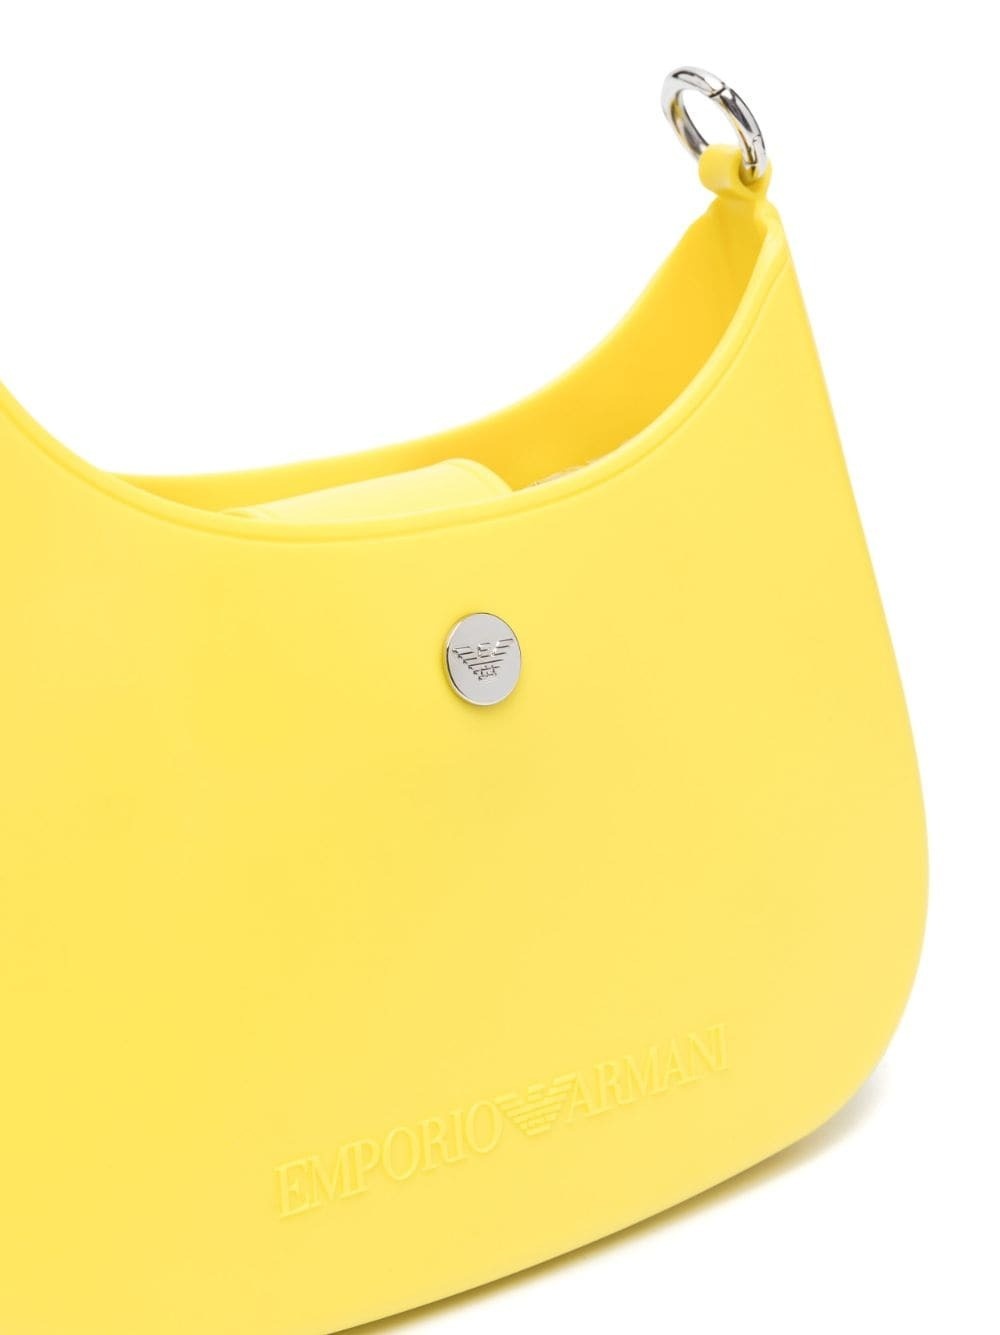 EMPORIO ARMANI - Small Shoulder Bag